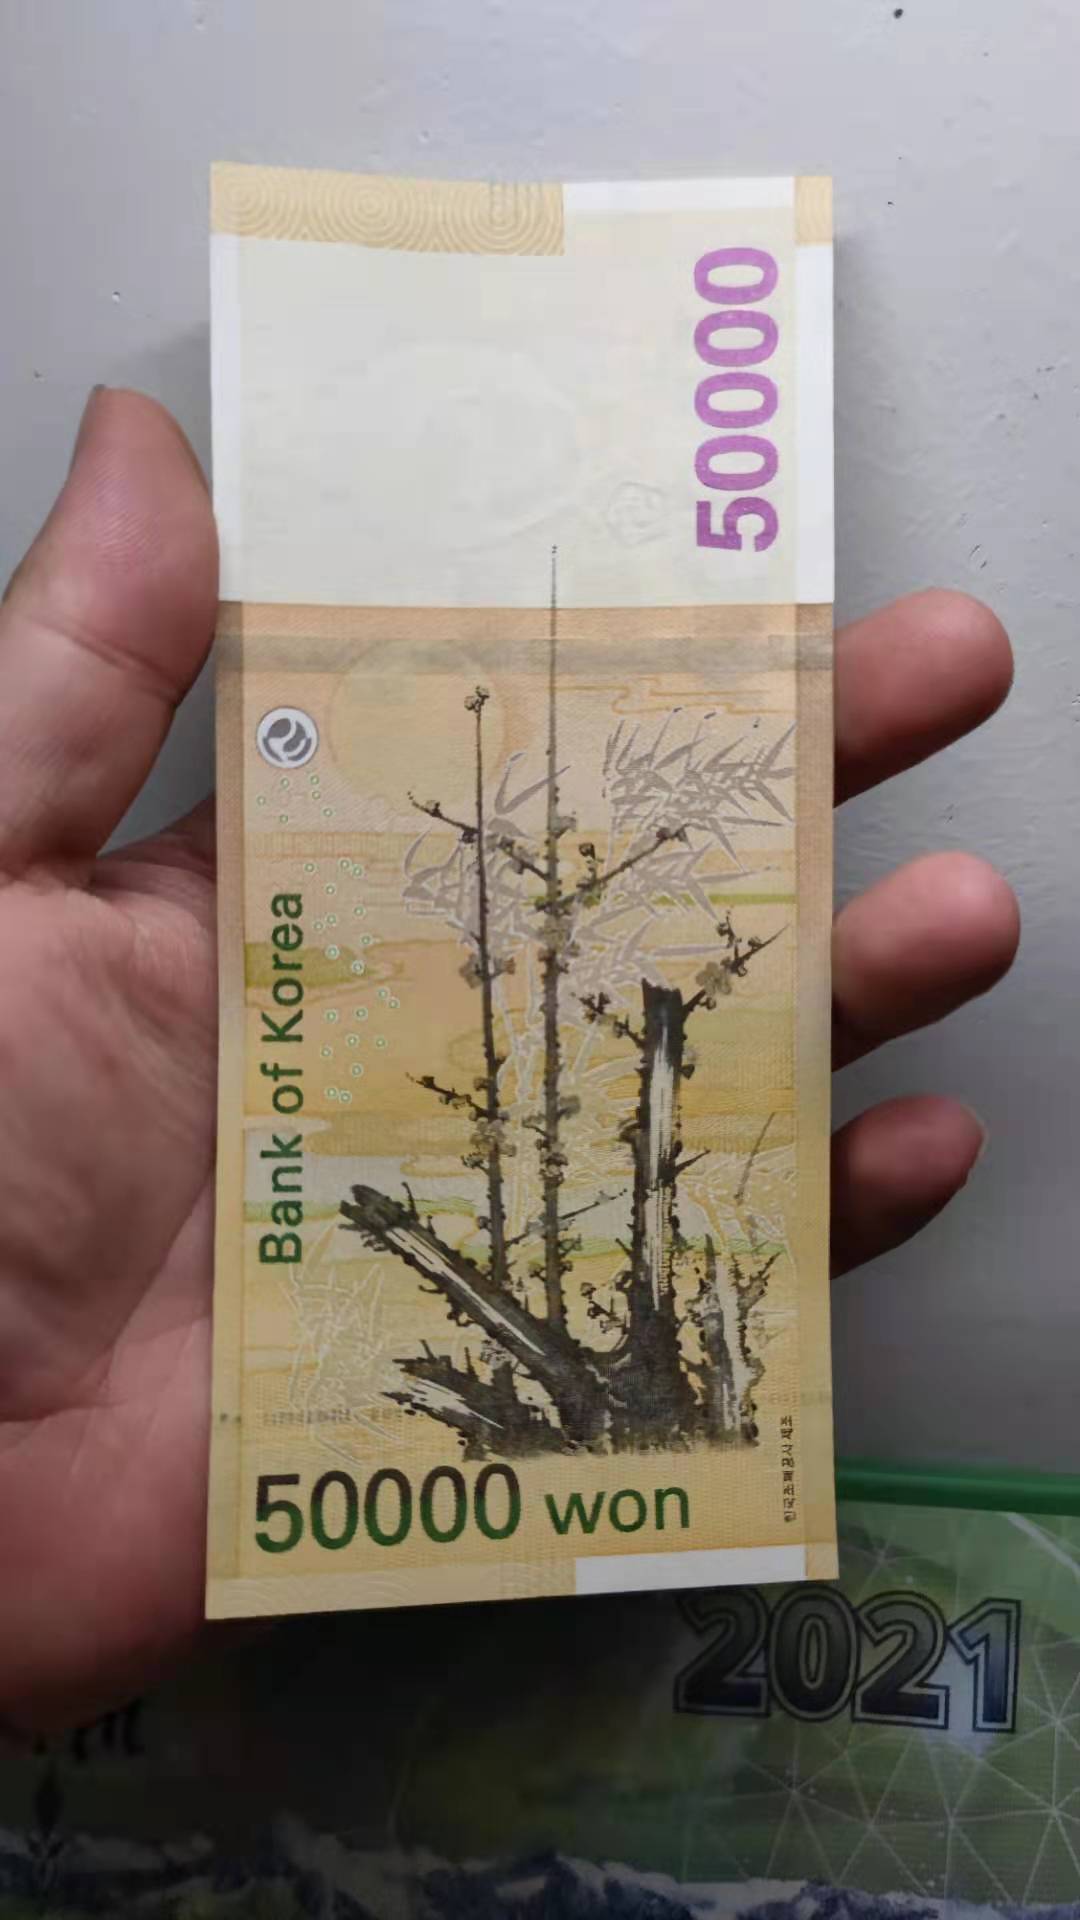 韩国最高面额50000韩元纸币,正面是韩国一位伟大的女性